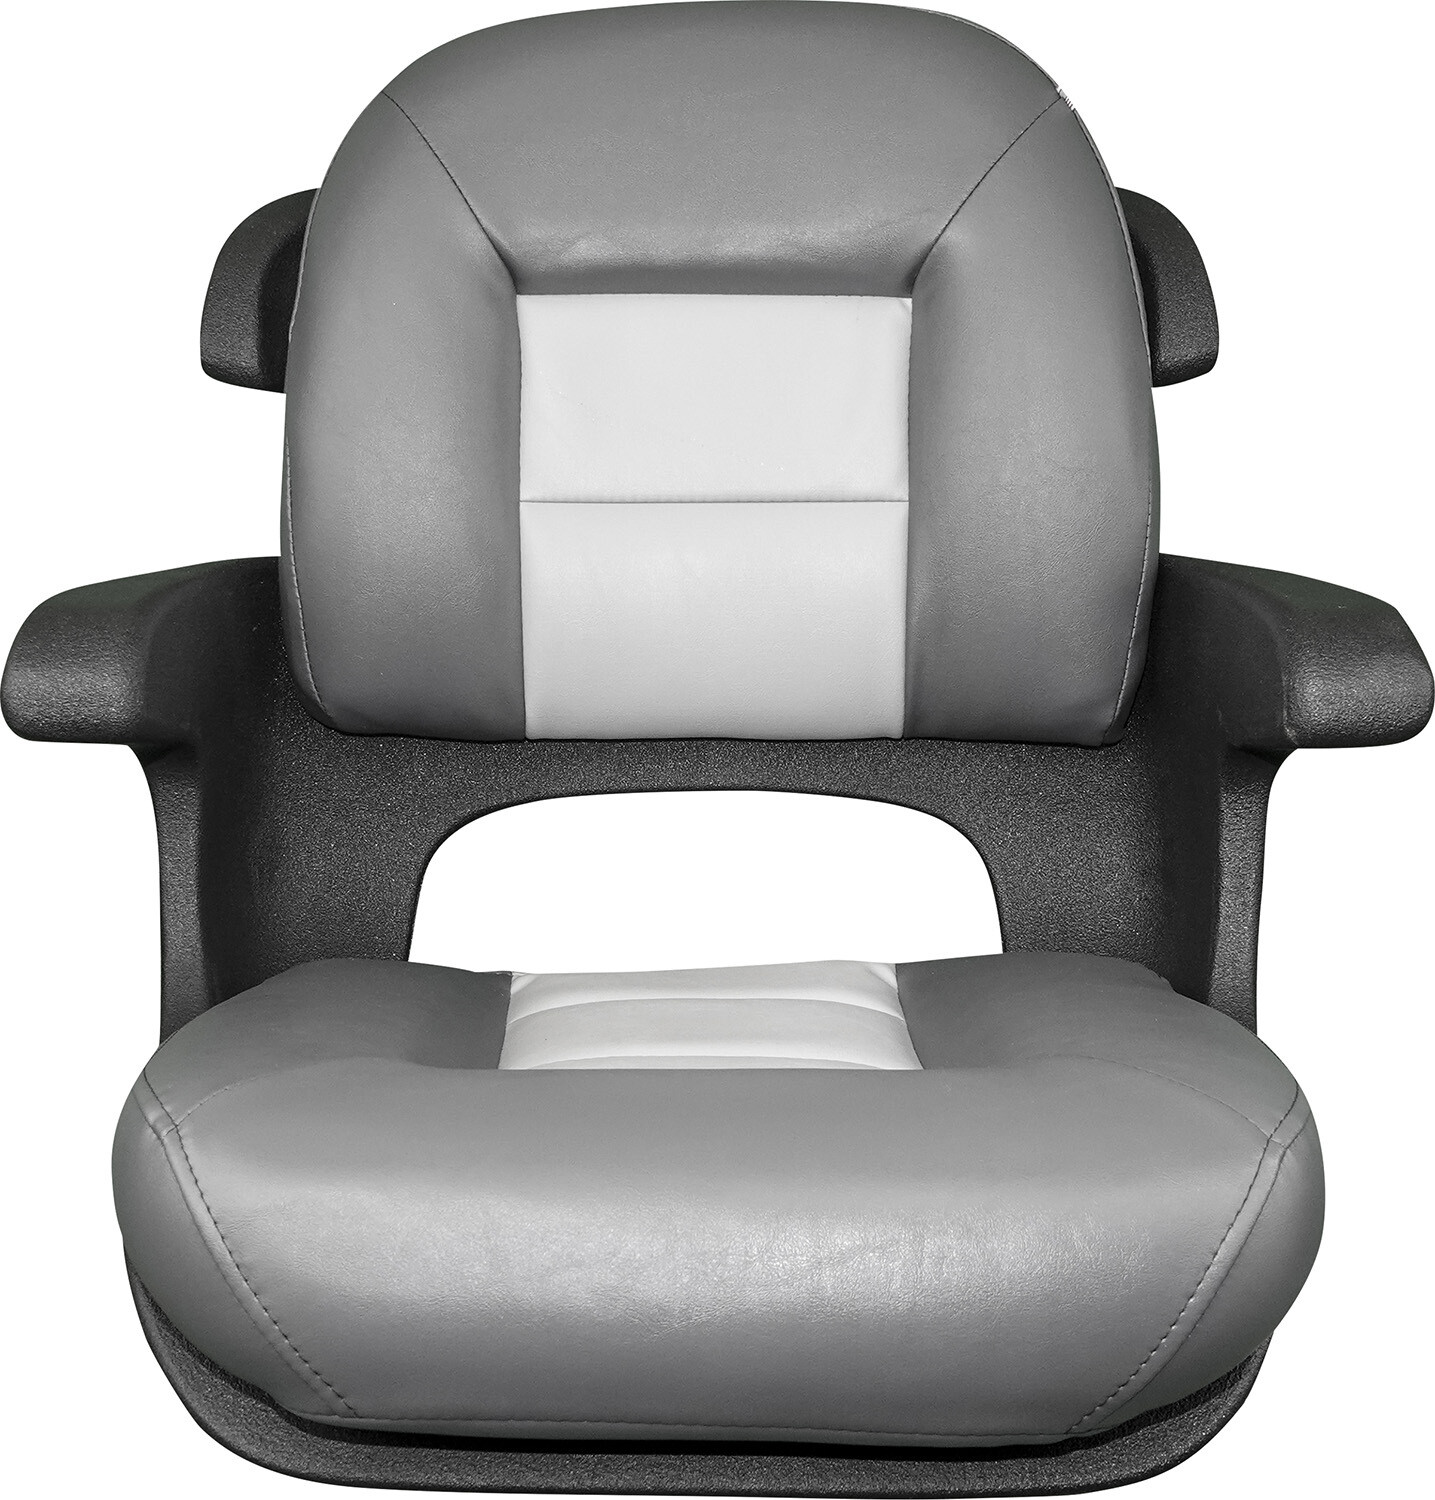 TEMPRESS Tempress Elite Helm Seat, Low Back, White